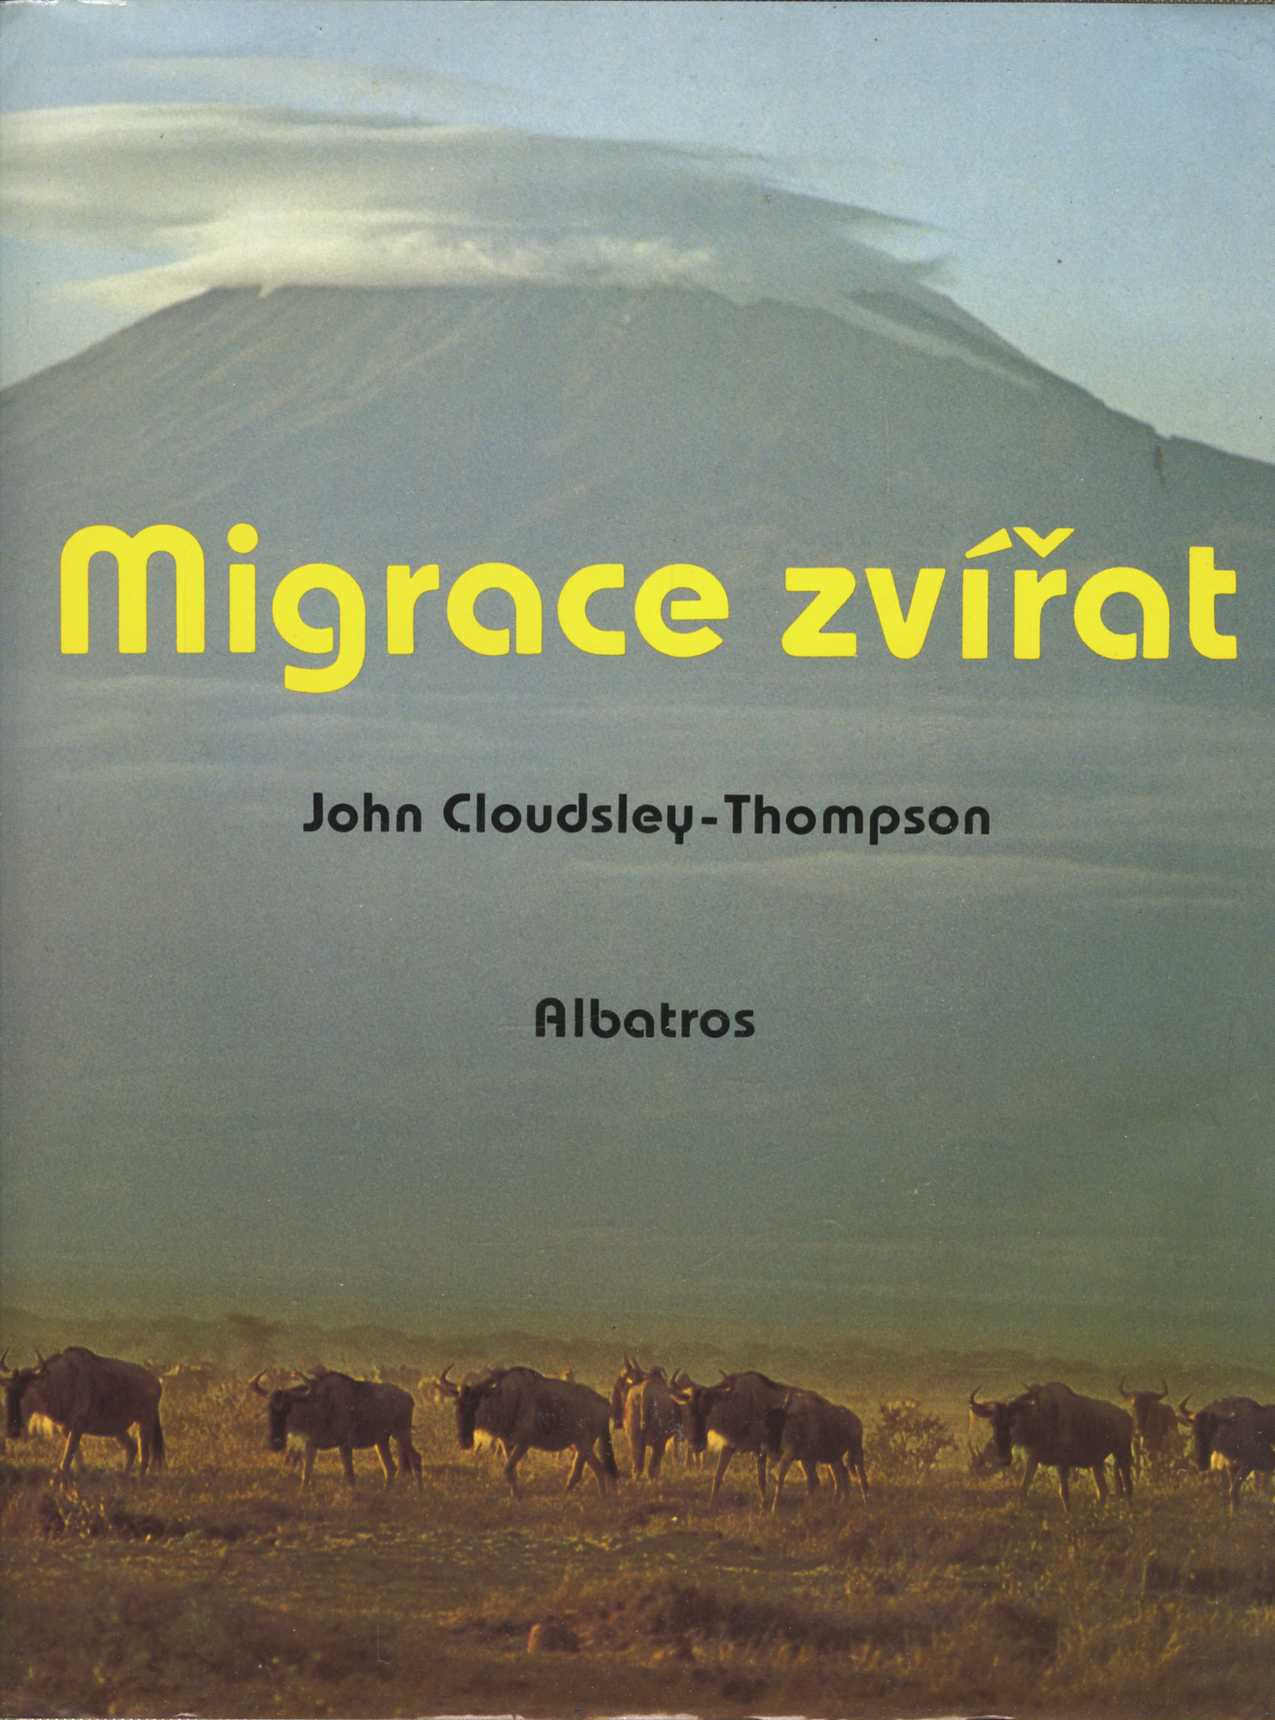 Migrace zvířat (John Cloudsley-Thompson)